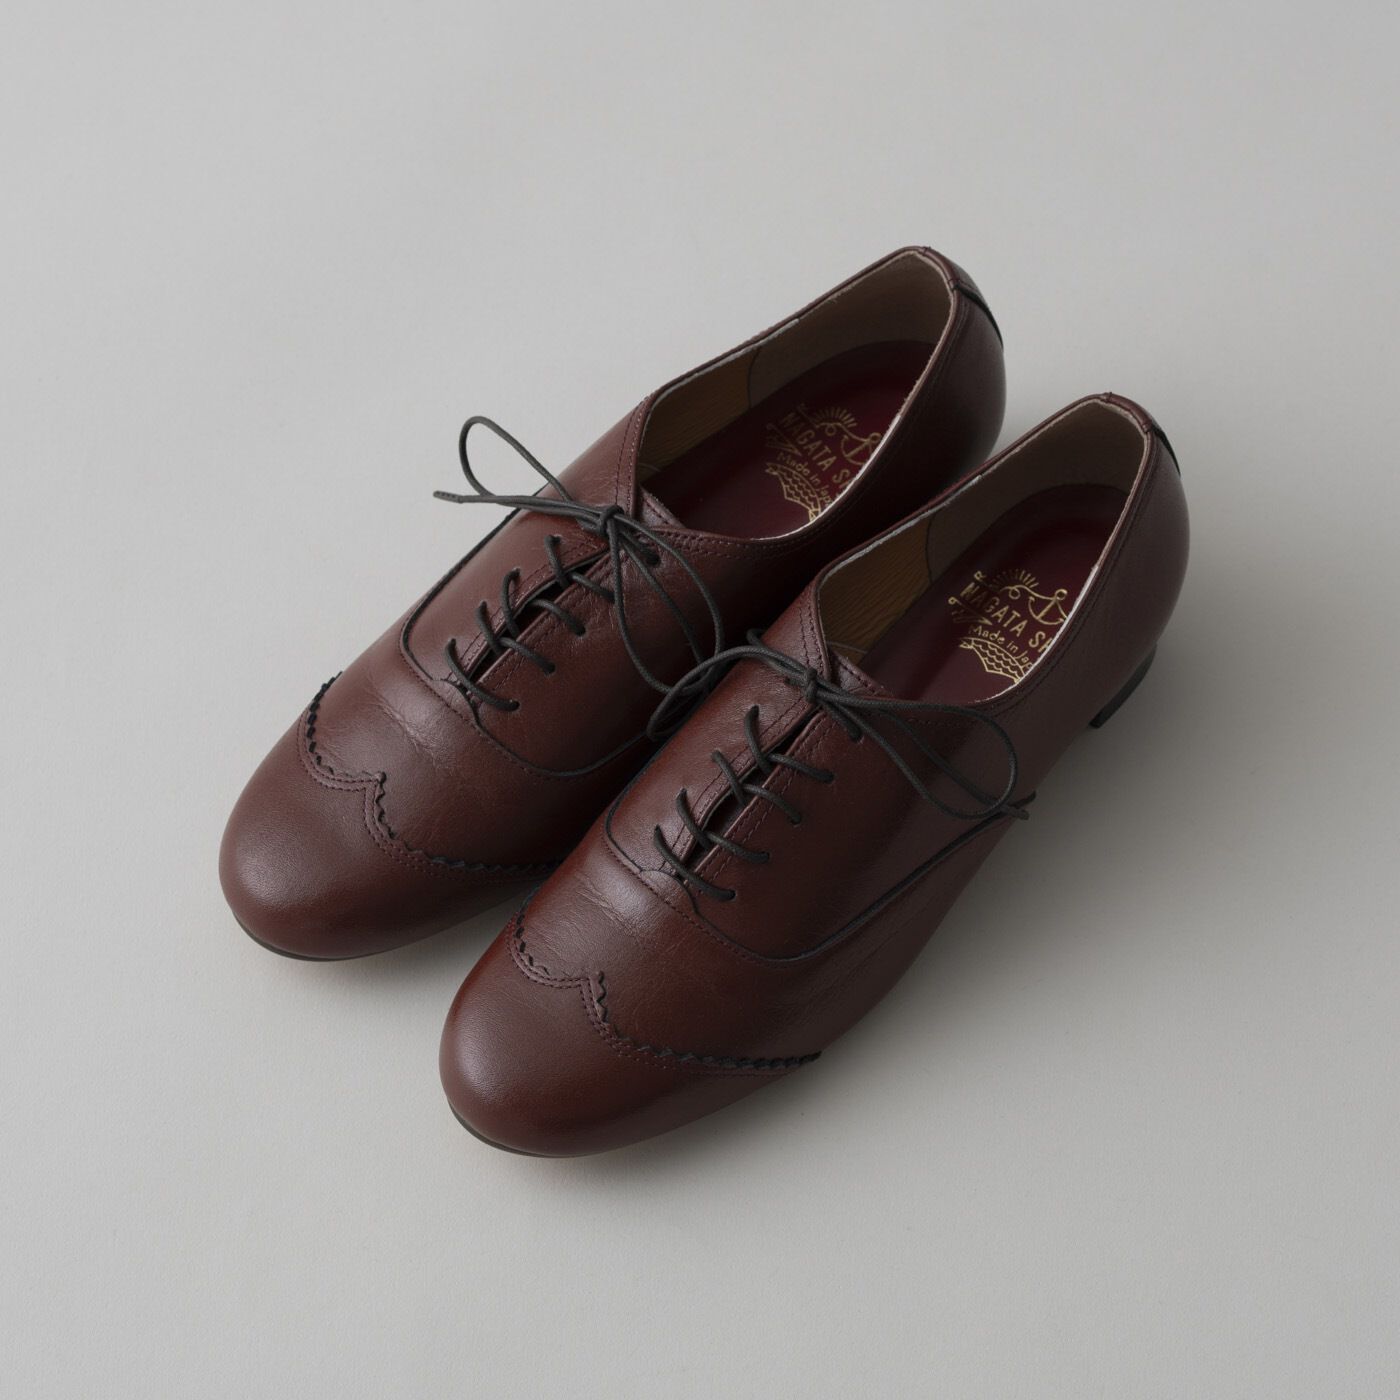 ＆Stories|長田の靴メーカーと作った　職人本革のレースアップシューズ〈レッドブラウン〉|幅広・甲高の足も気持ちよく包み込むデザイン。